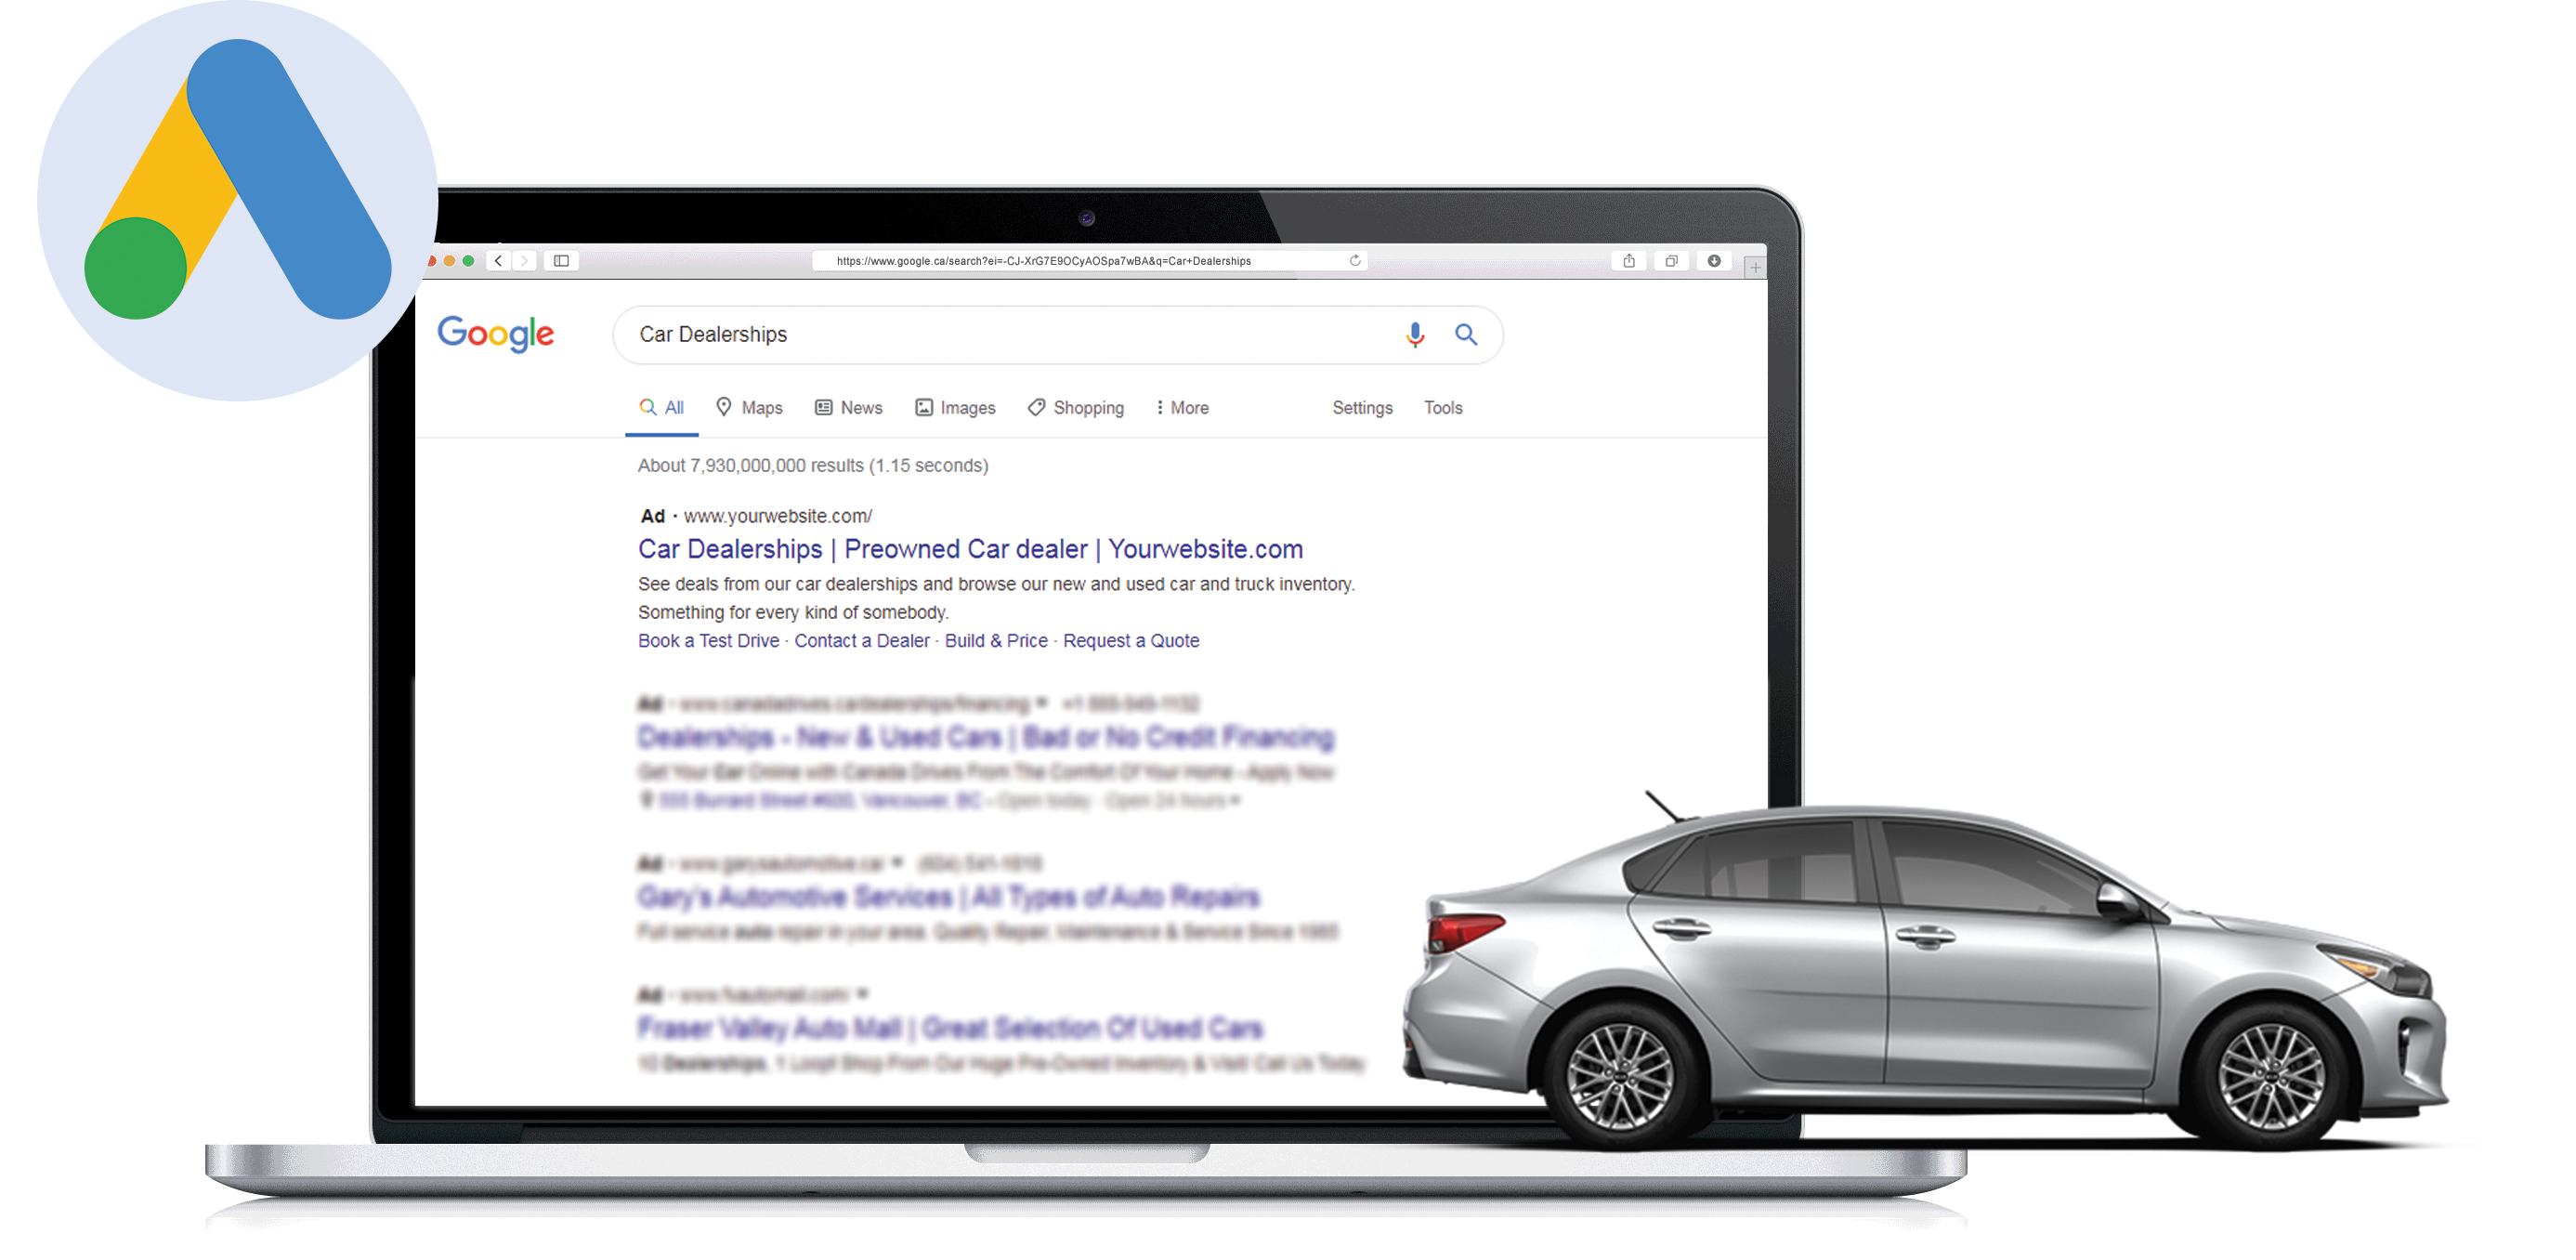 Google Ads for Car Dealerships